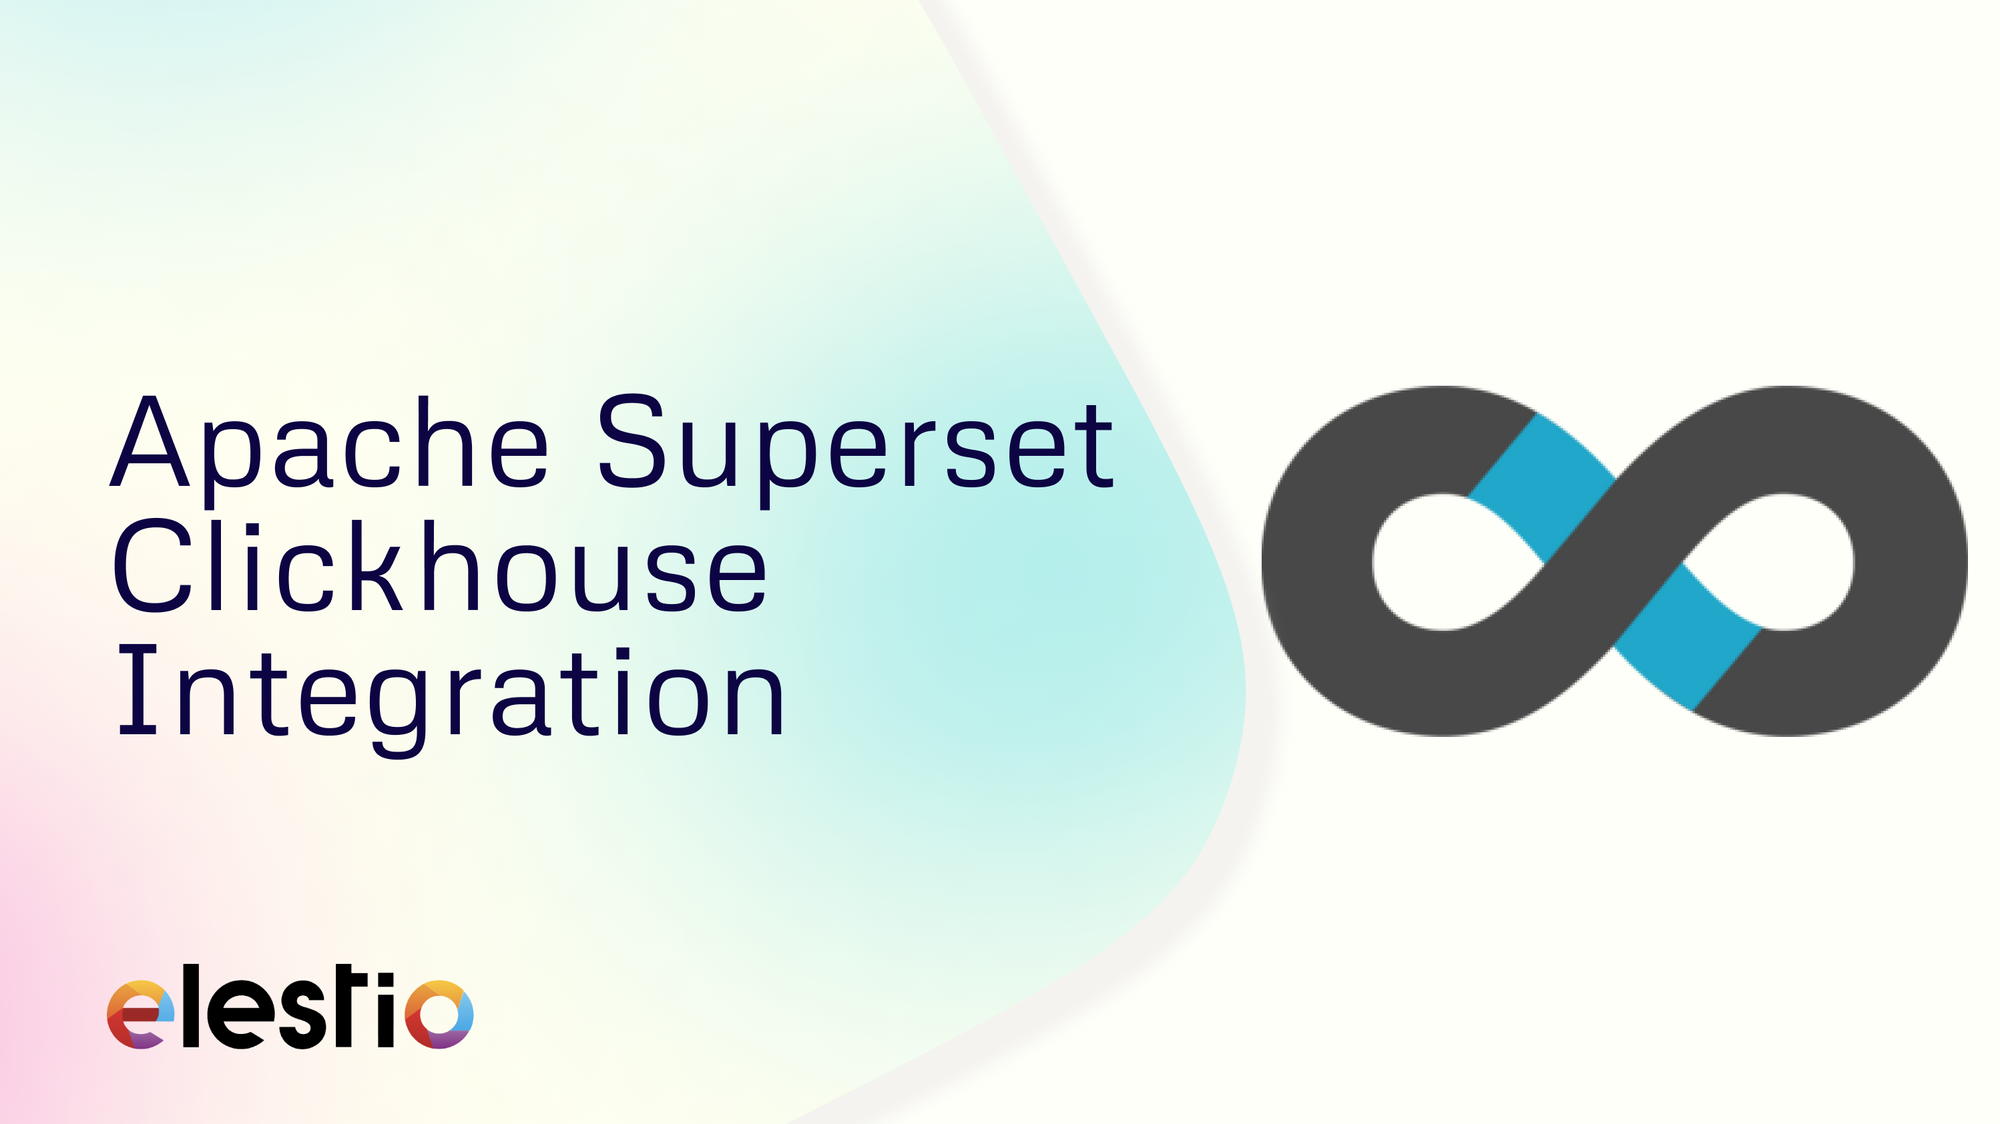 Apache Superset Clickhouse integration